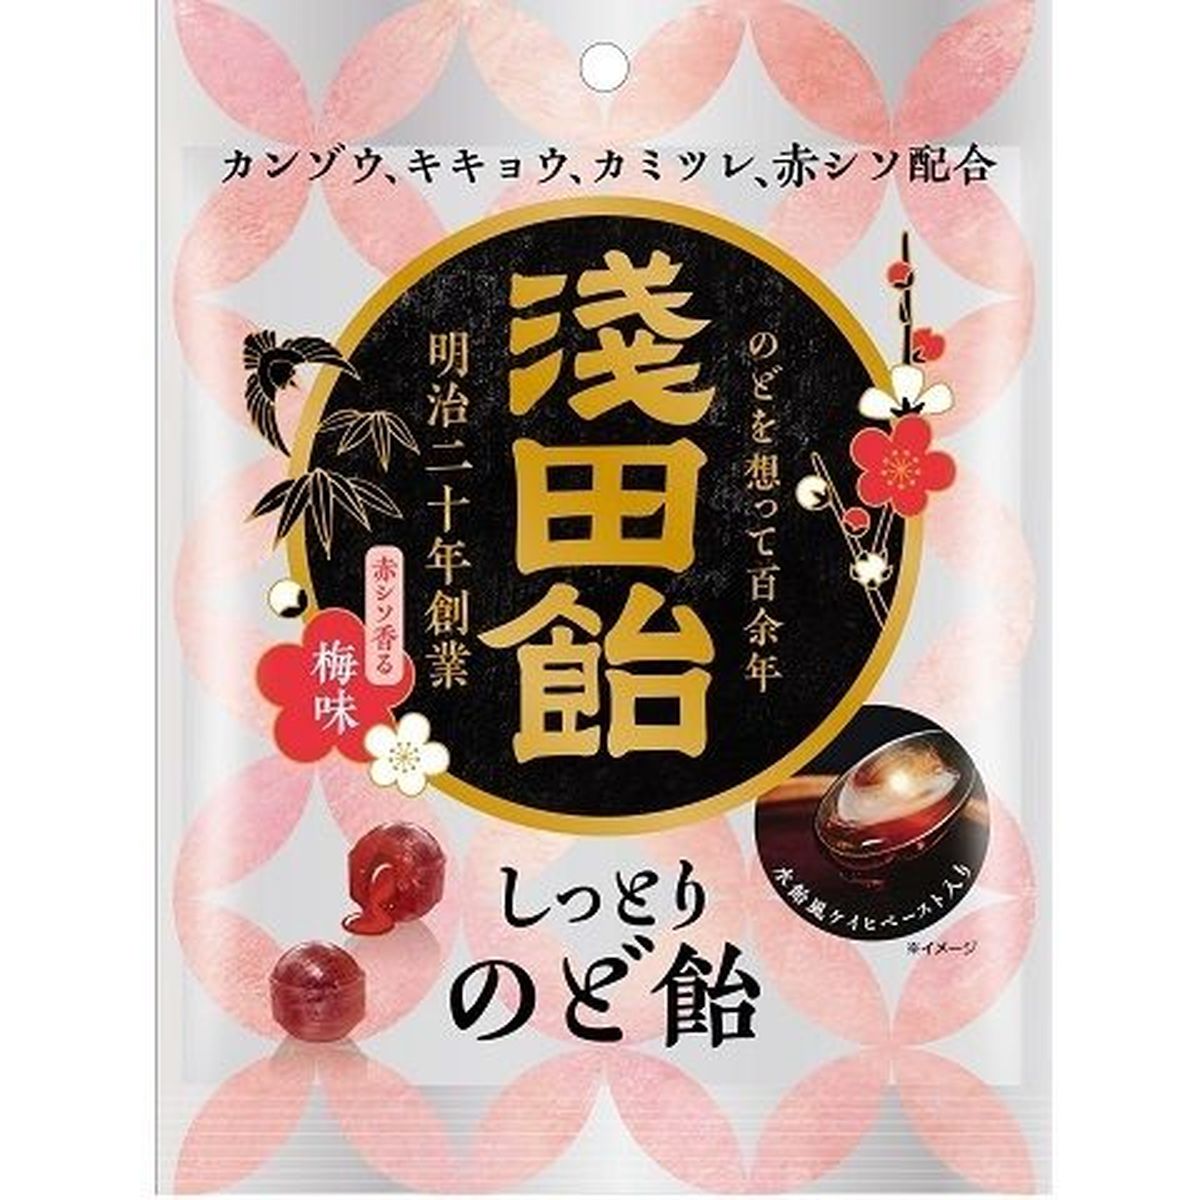 【6個入リ】浅田飴 シットリノド飴 赤シソ香ル梅味 61g